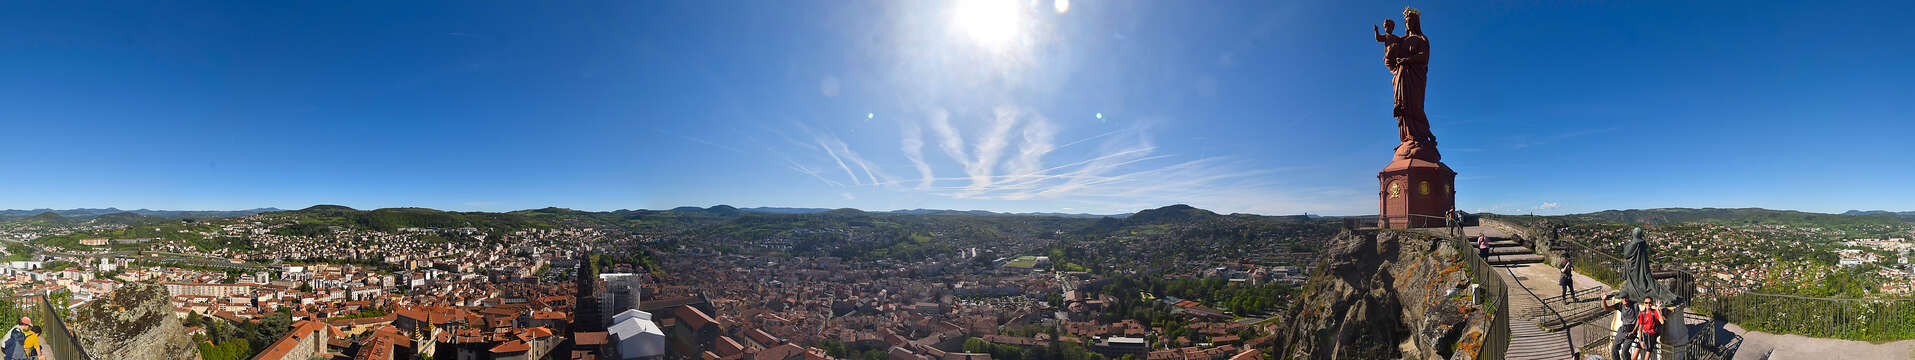 Webcam della statua di Notre-Dame de France a 360° a Le Puy-en-Velay